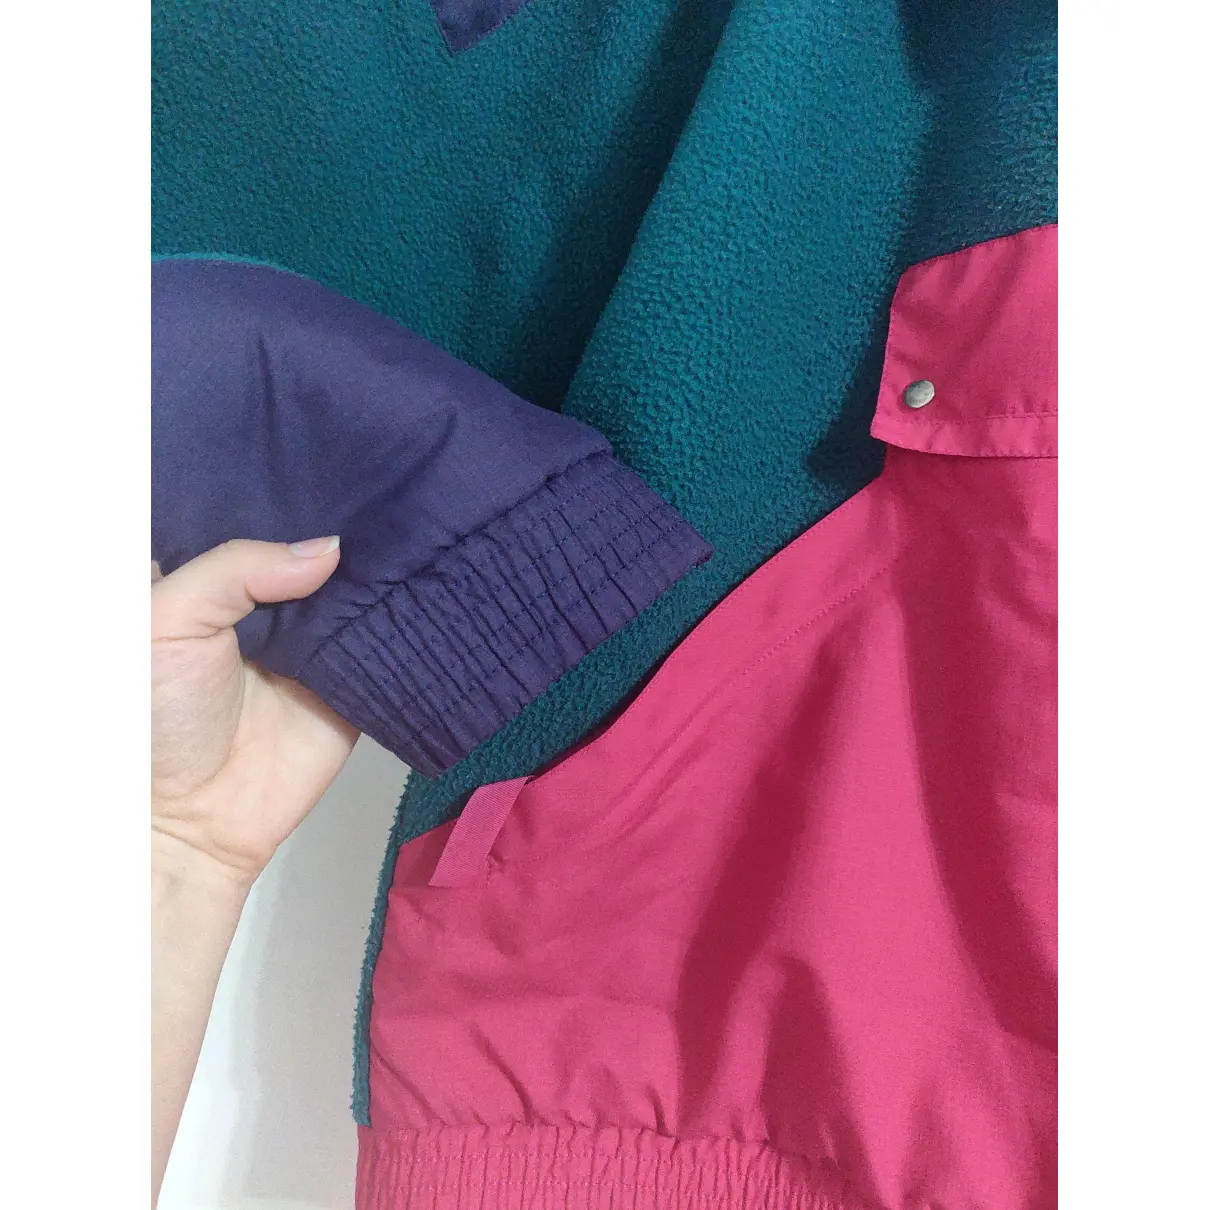 Buy Degre 7 Multicolour Polyester Knitwear & Sweatshirt online